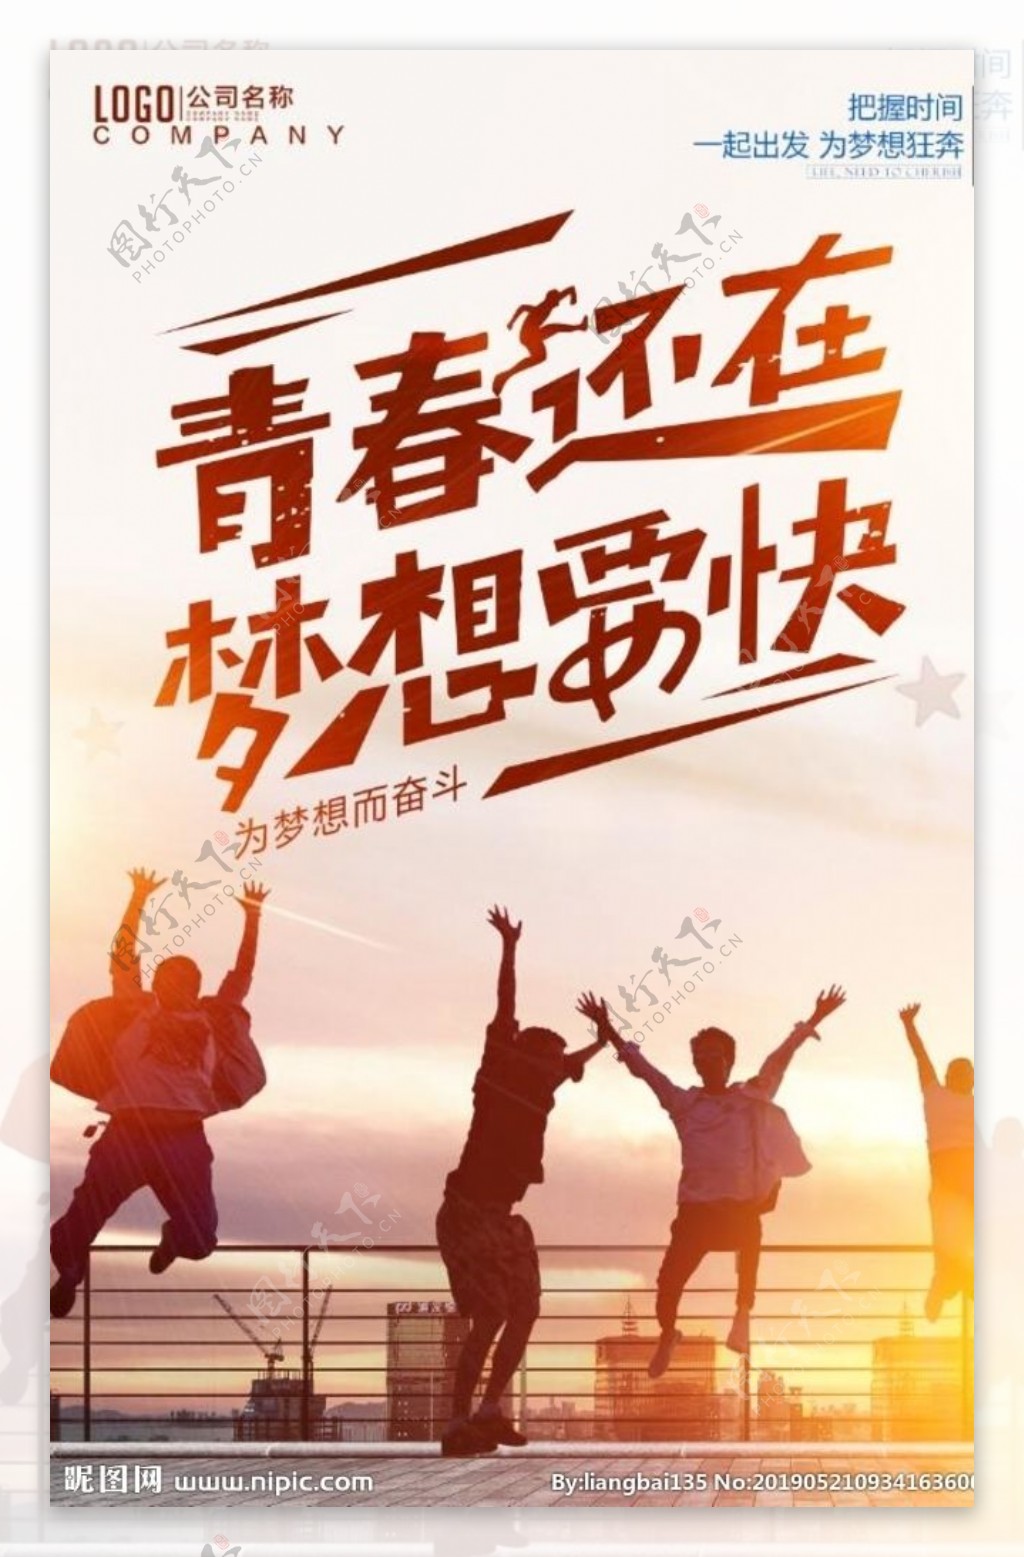 企业文化青春梦想海报